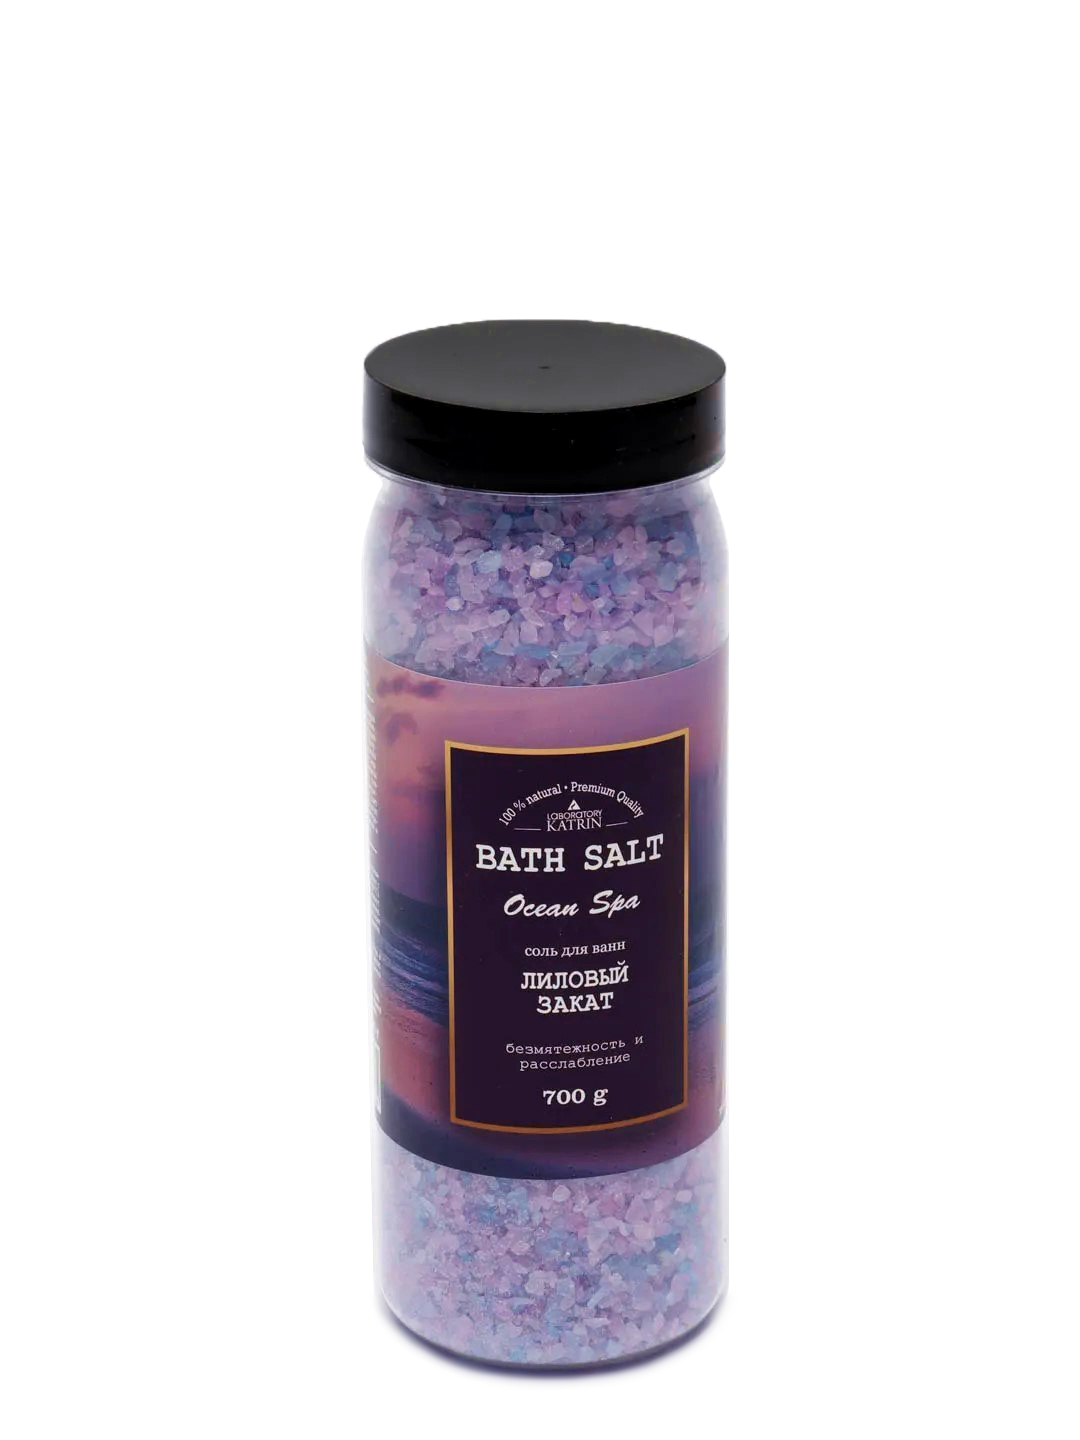 Купить Соль для ванн Laboratory KATRIN Ocean spa Лиловый закат 700 г, Лиловый Закат